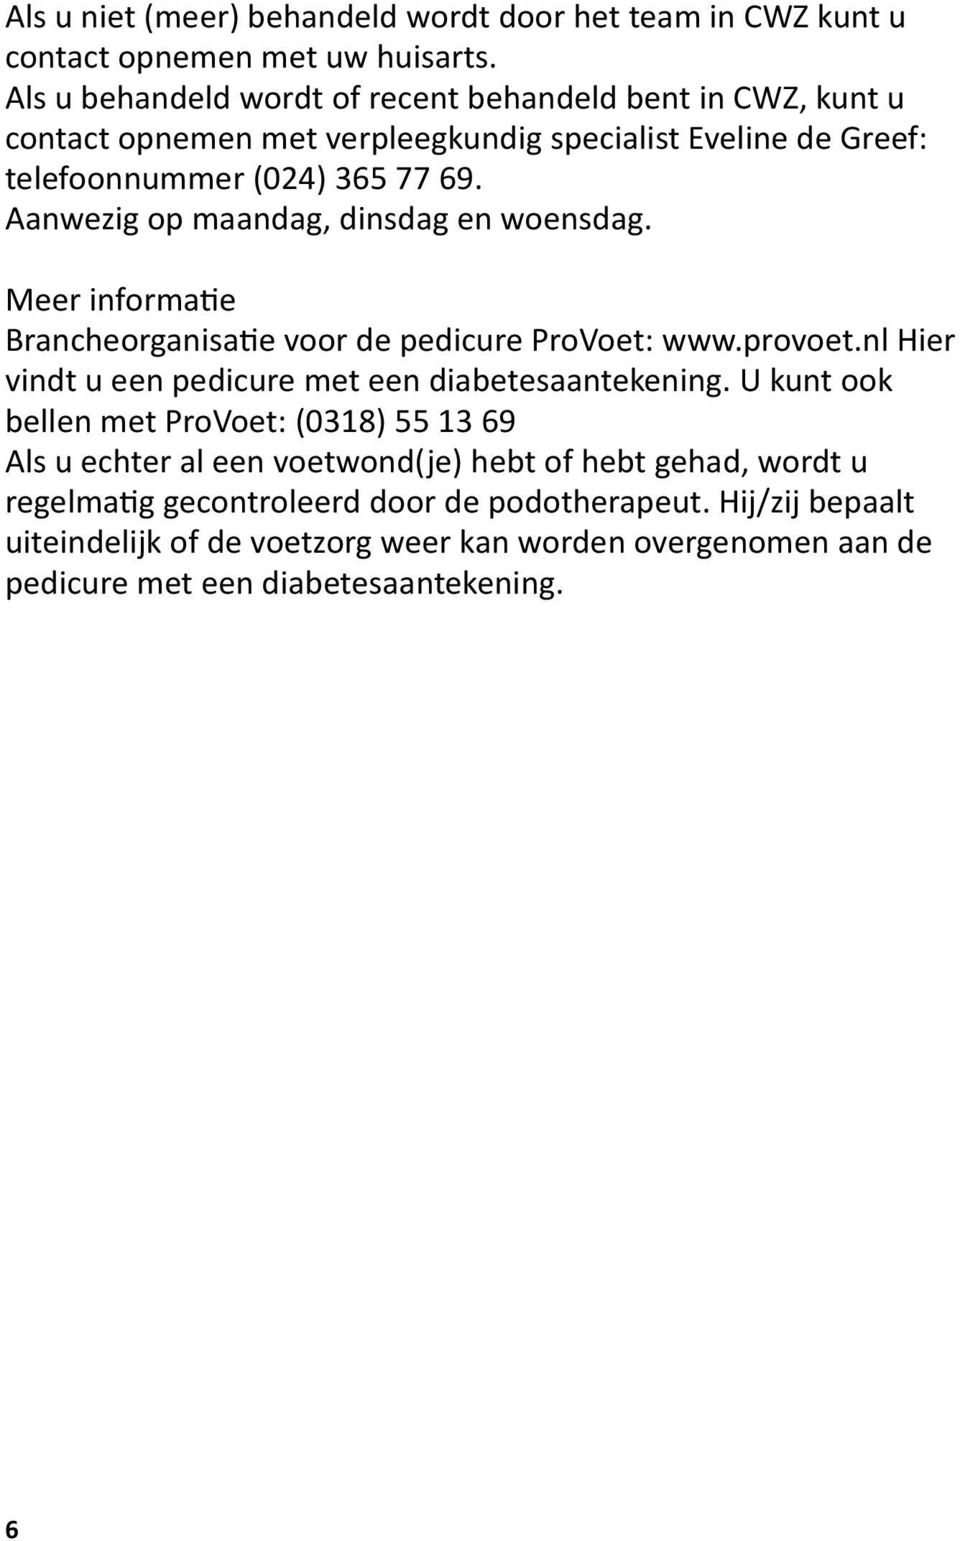 Aanwezig op maandag, dinsdag en woensdag. Meer informatie Brancheorganisatie voor de pedicure ProVoet: www.provoet.nl Hier vindt u een pedicure met een diabetesaantekening.